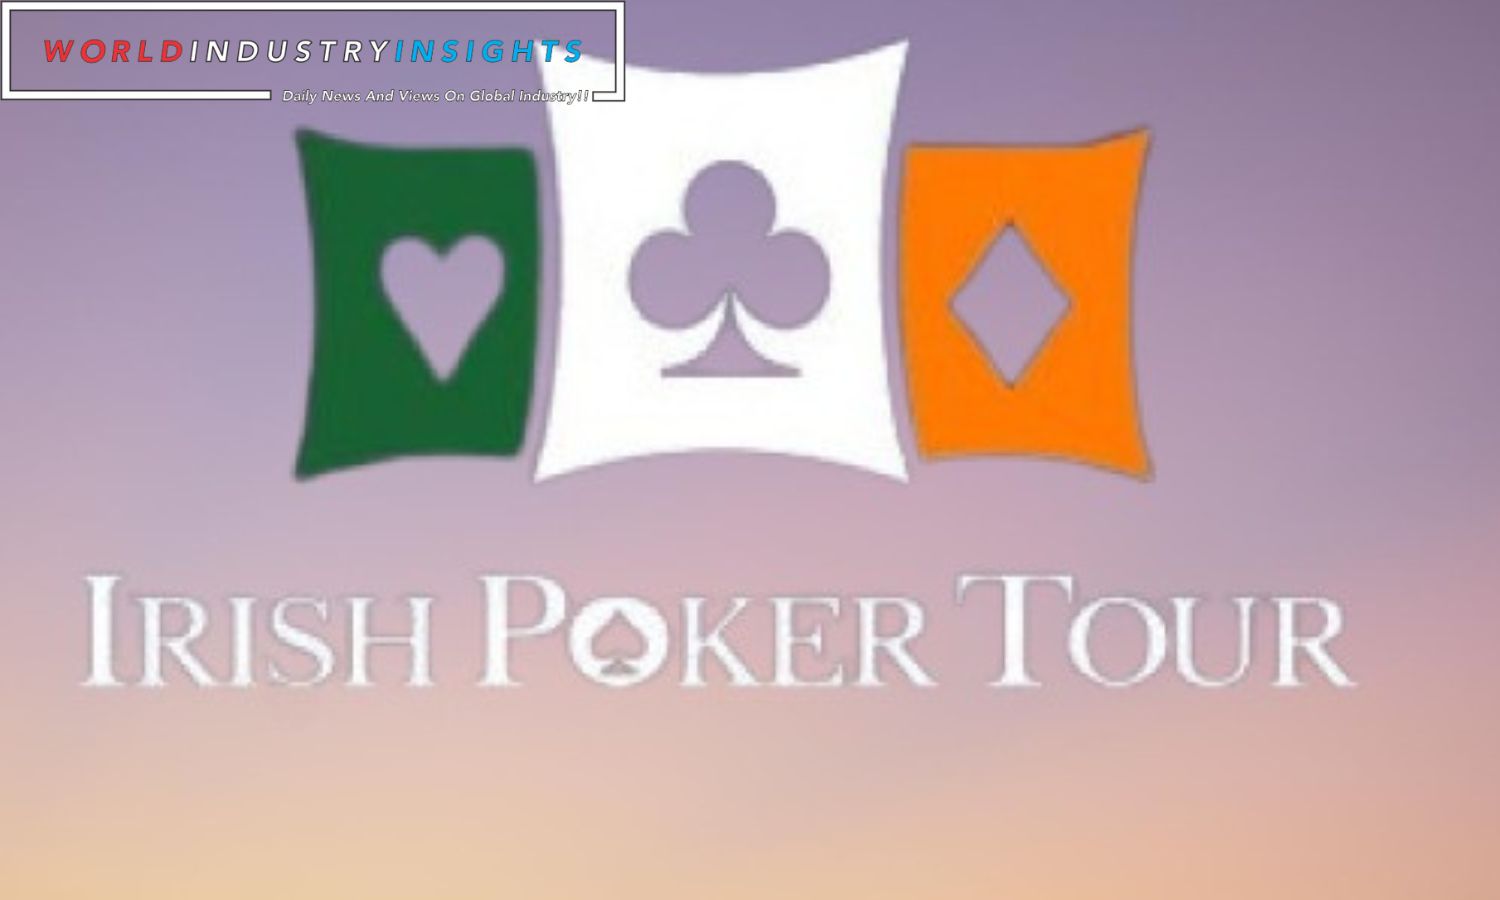 The Irish Poker Tour